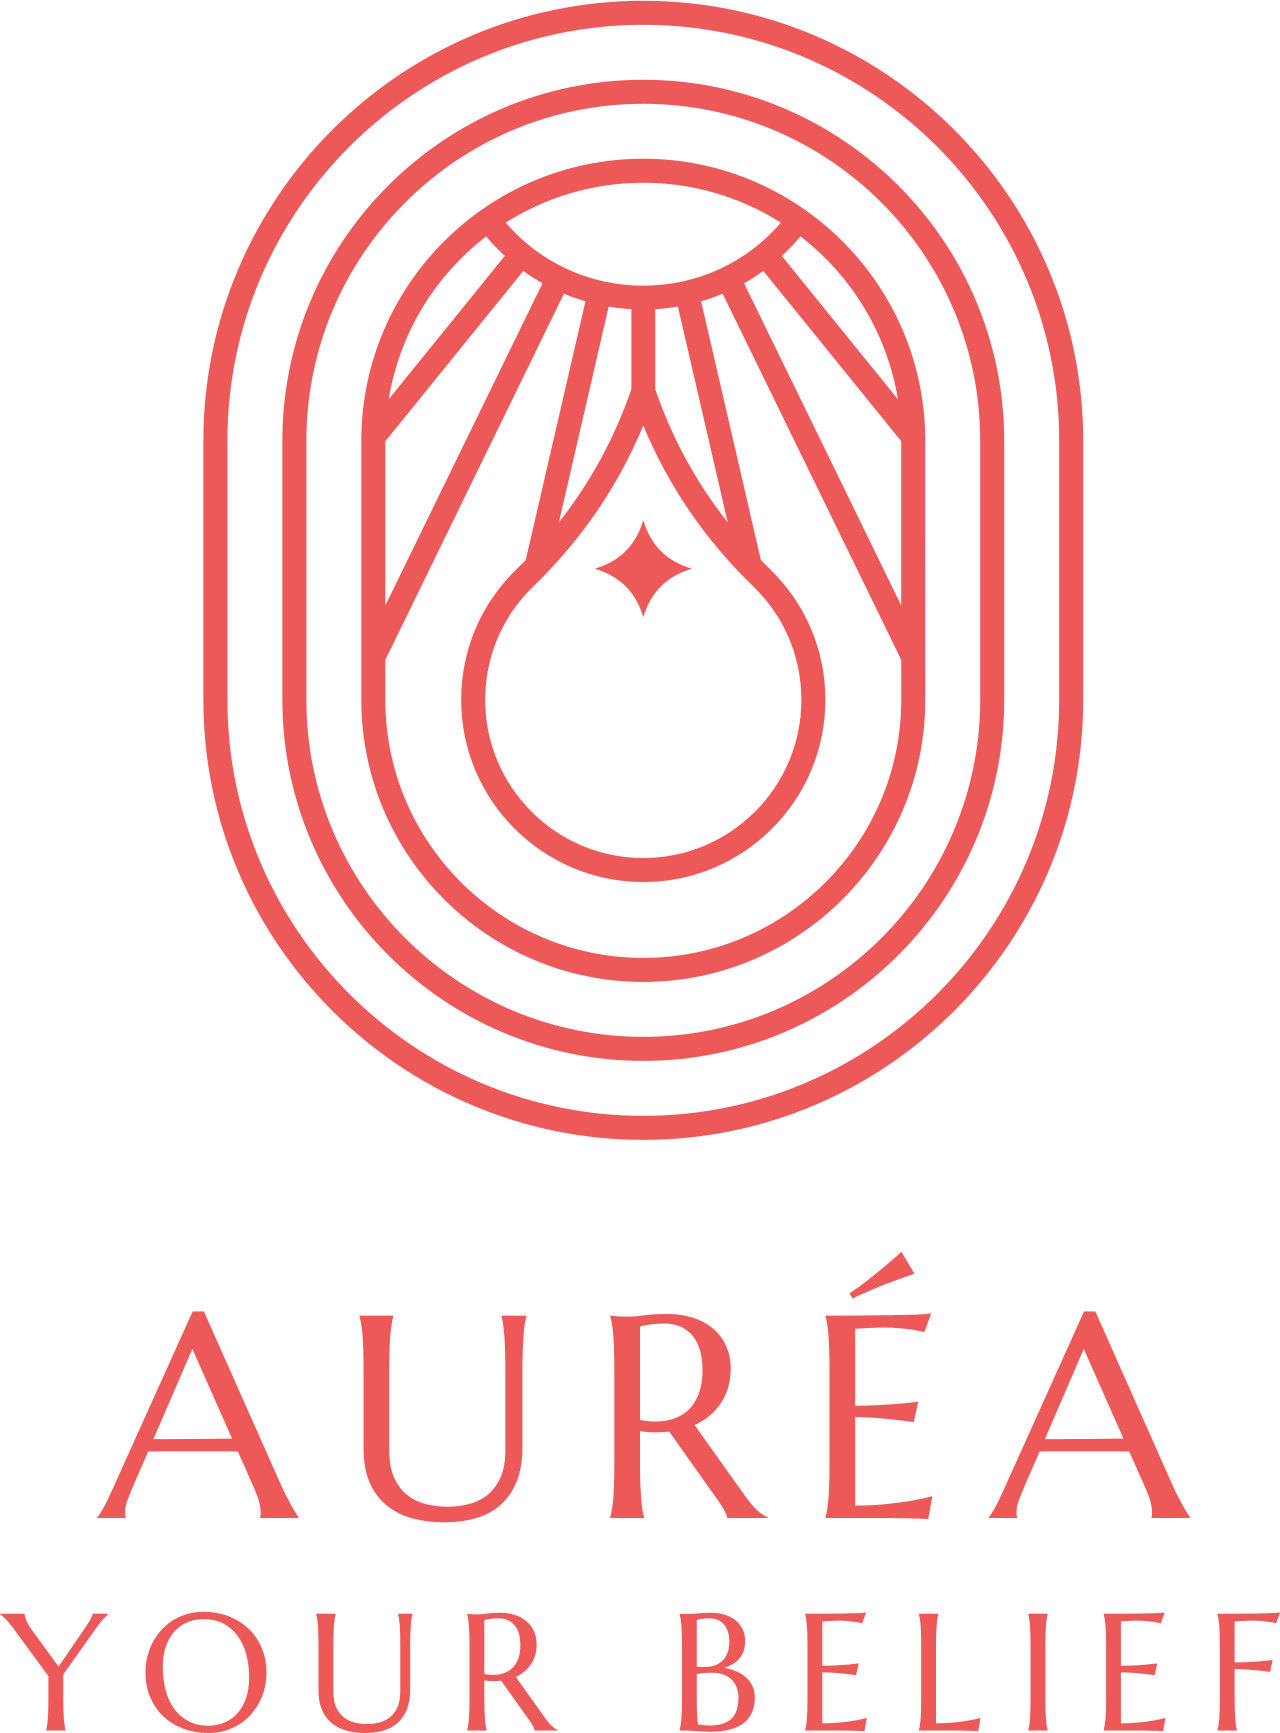 Auréa's logo